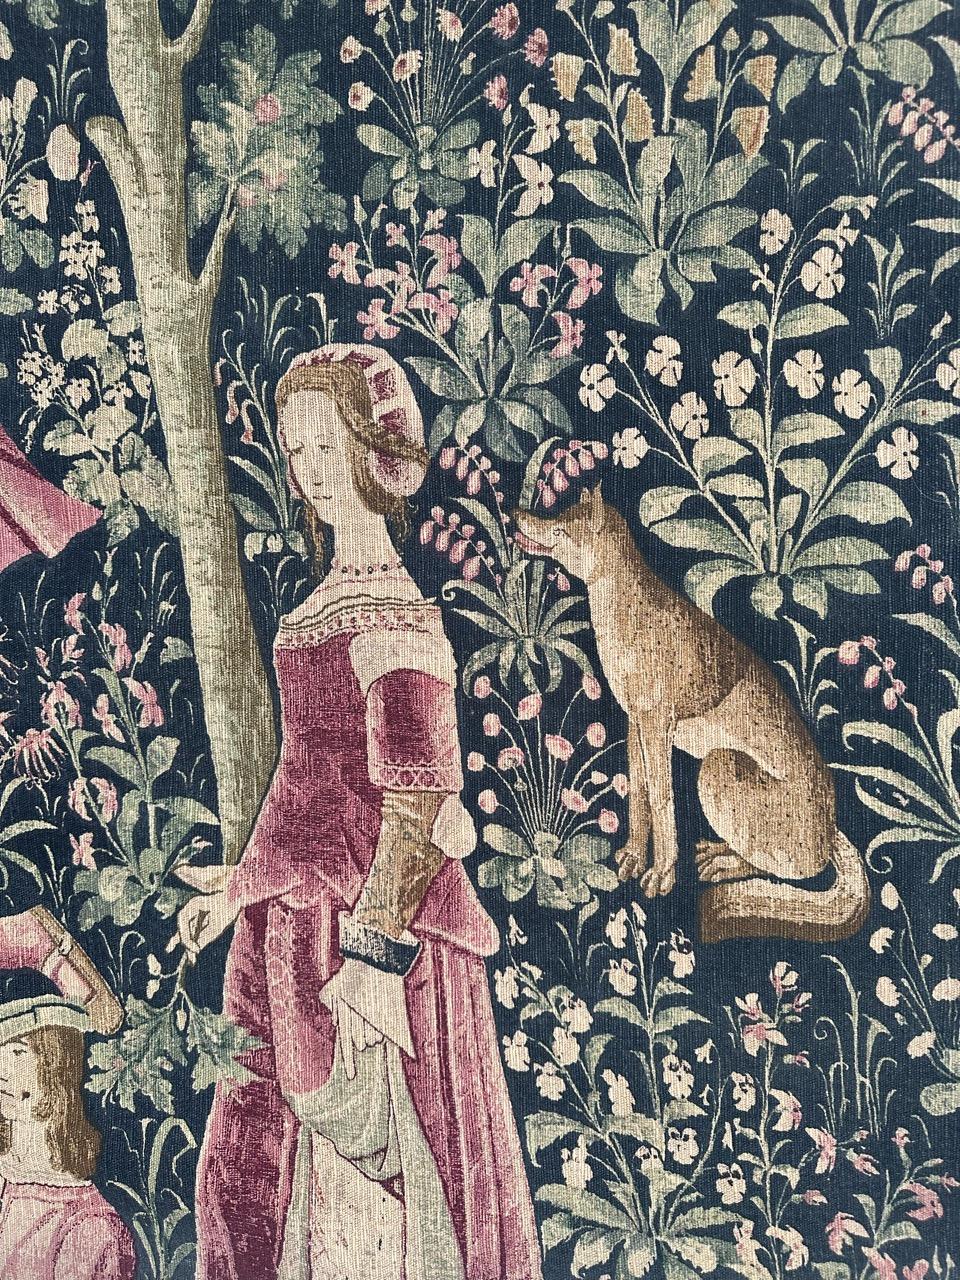 Belle tapisserie française vintage imprimée à la main avec un beau design médiéval et de belles couleurs. Découvrez une étonnante tapisserie du milieu du XXe siècle, méticuleusement imprimée à la main sur un support en coton. Cette exquise